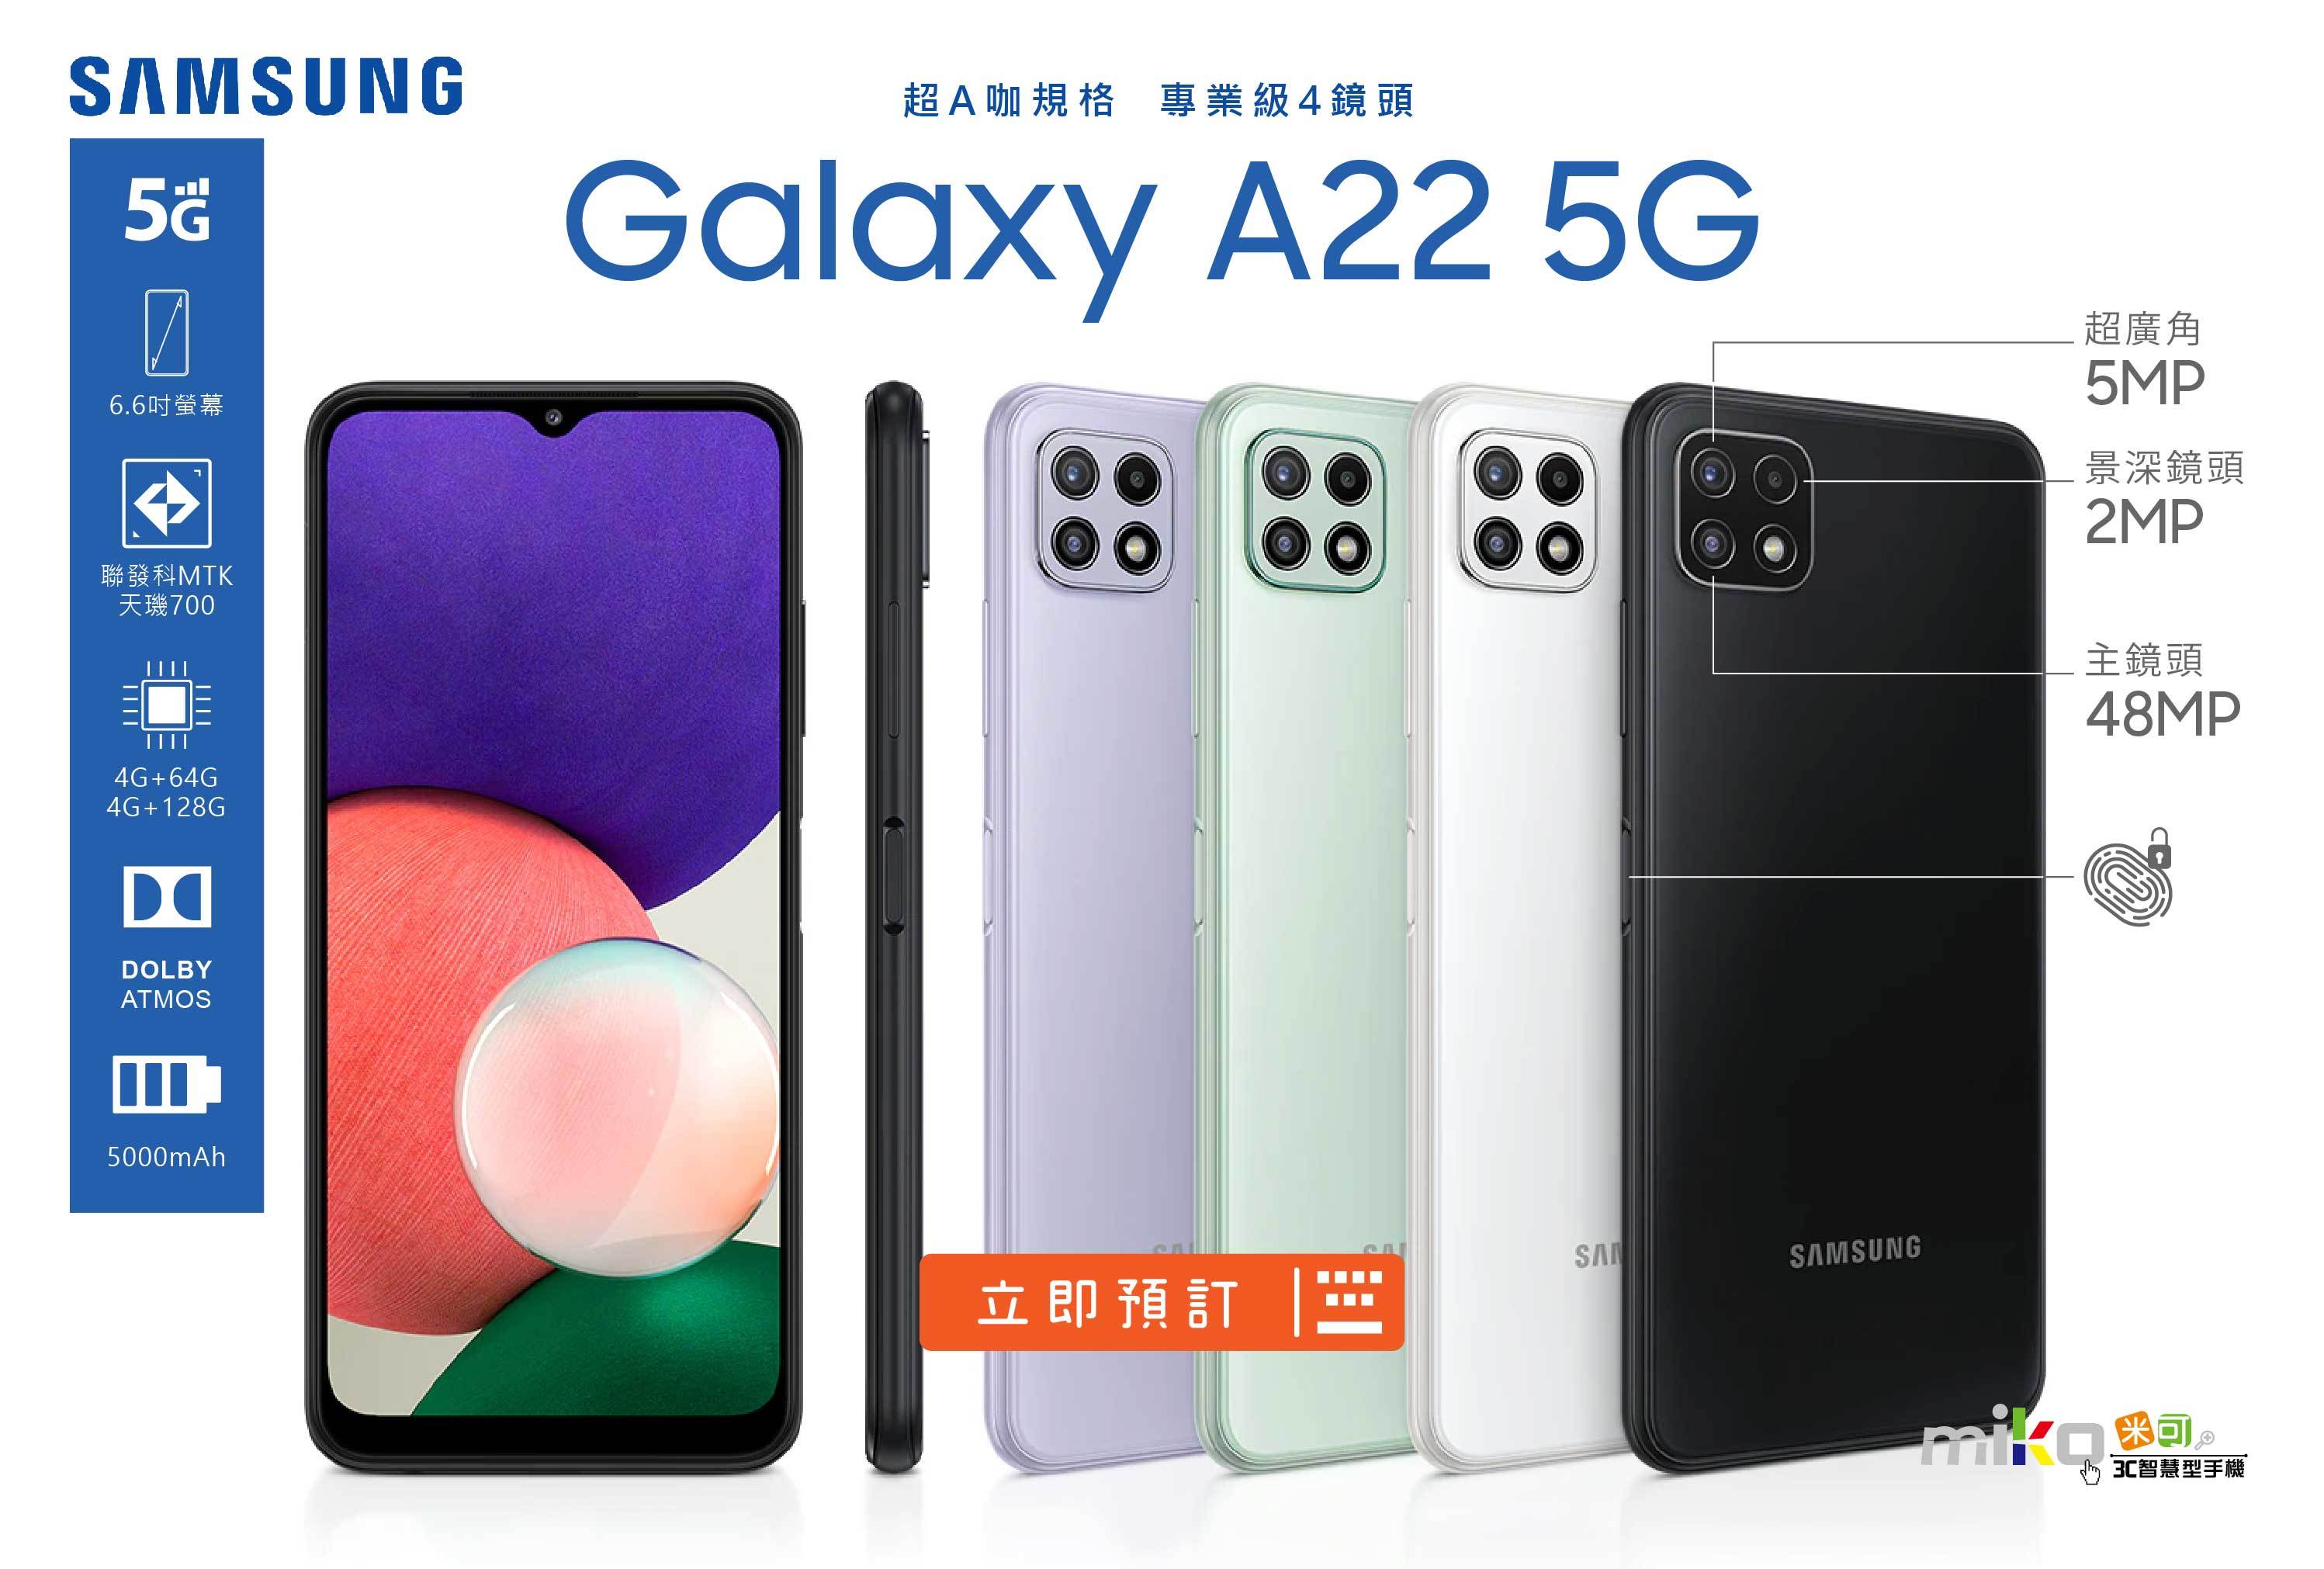 Samsung Galaxy A22 5G|規格圖解|miko米可手機館-台南/高雄/嘉義最便宜手機店